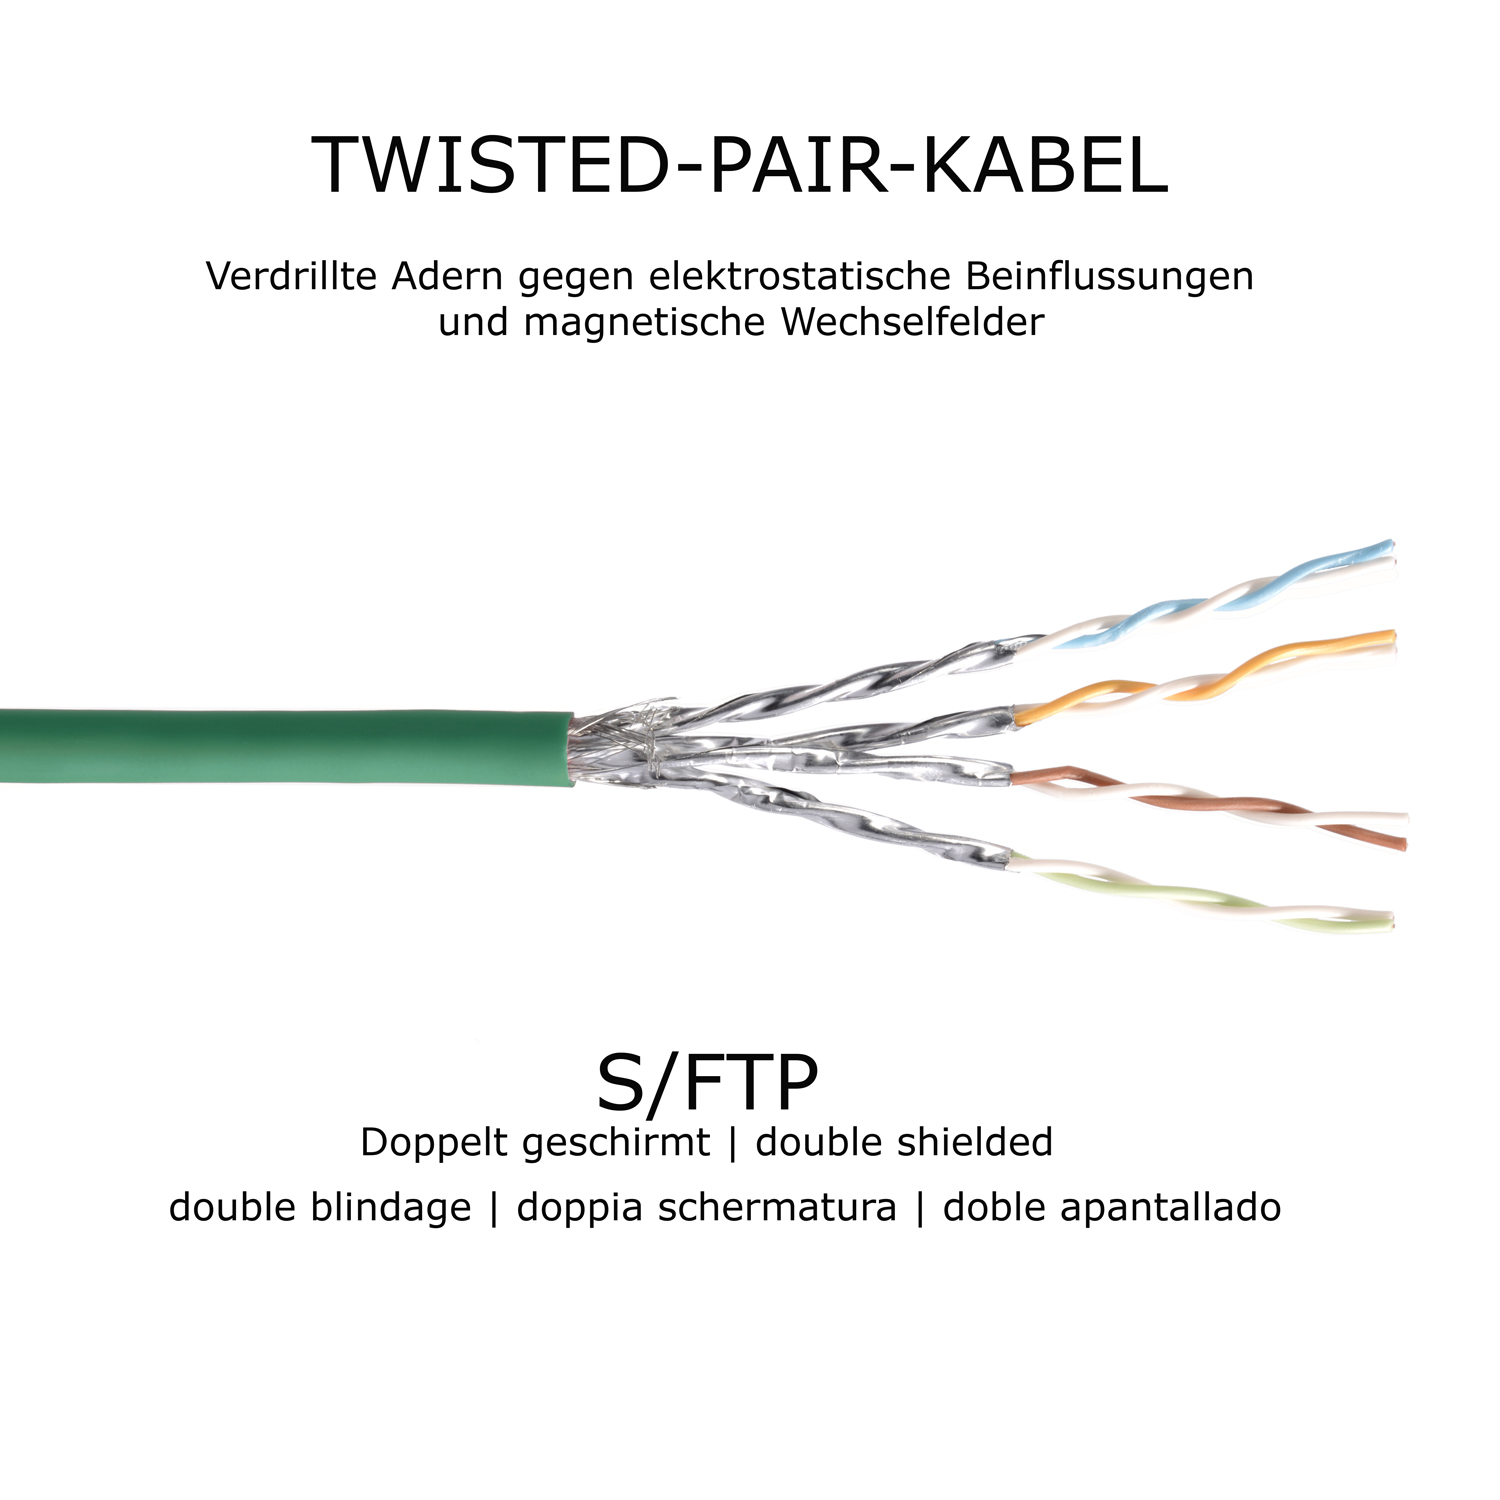 TPFNET 2m Patchkabel / Netzwerkkabel 10GBit, grün, m 2 S/FTP Netzwerkkabel